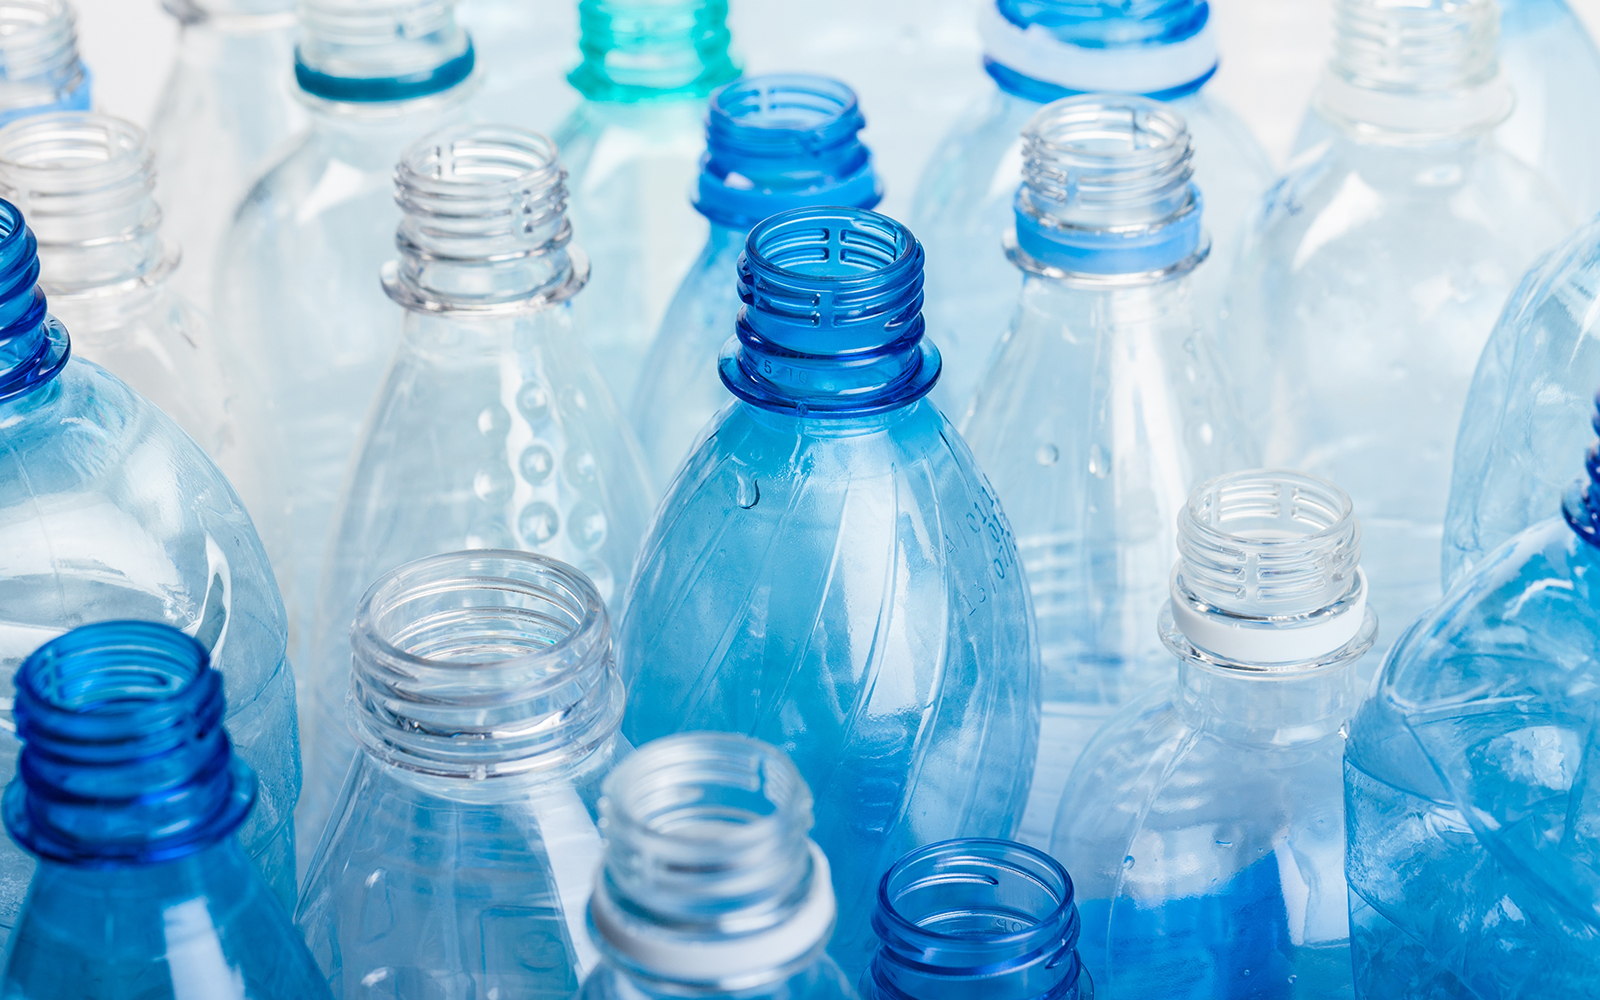 Photo of empty plastic bottles